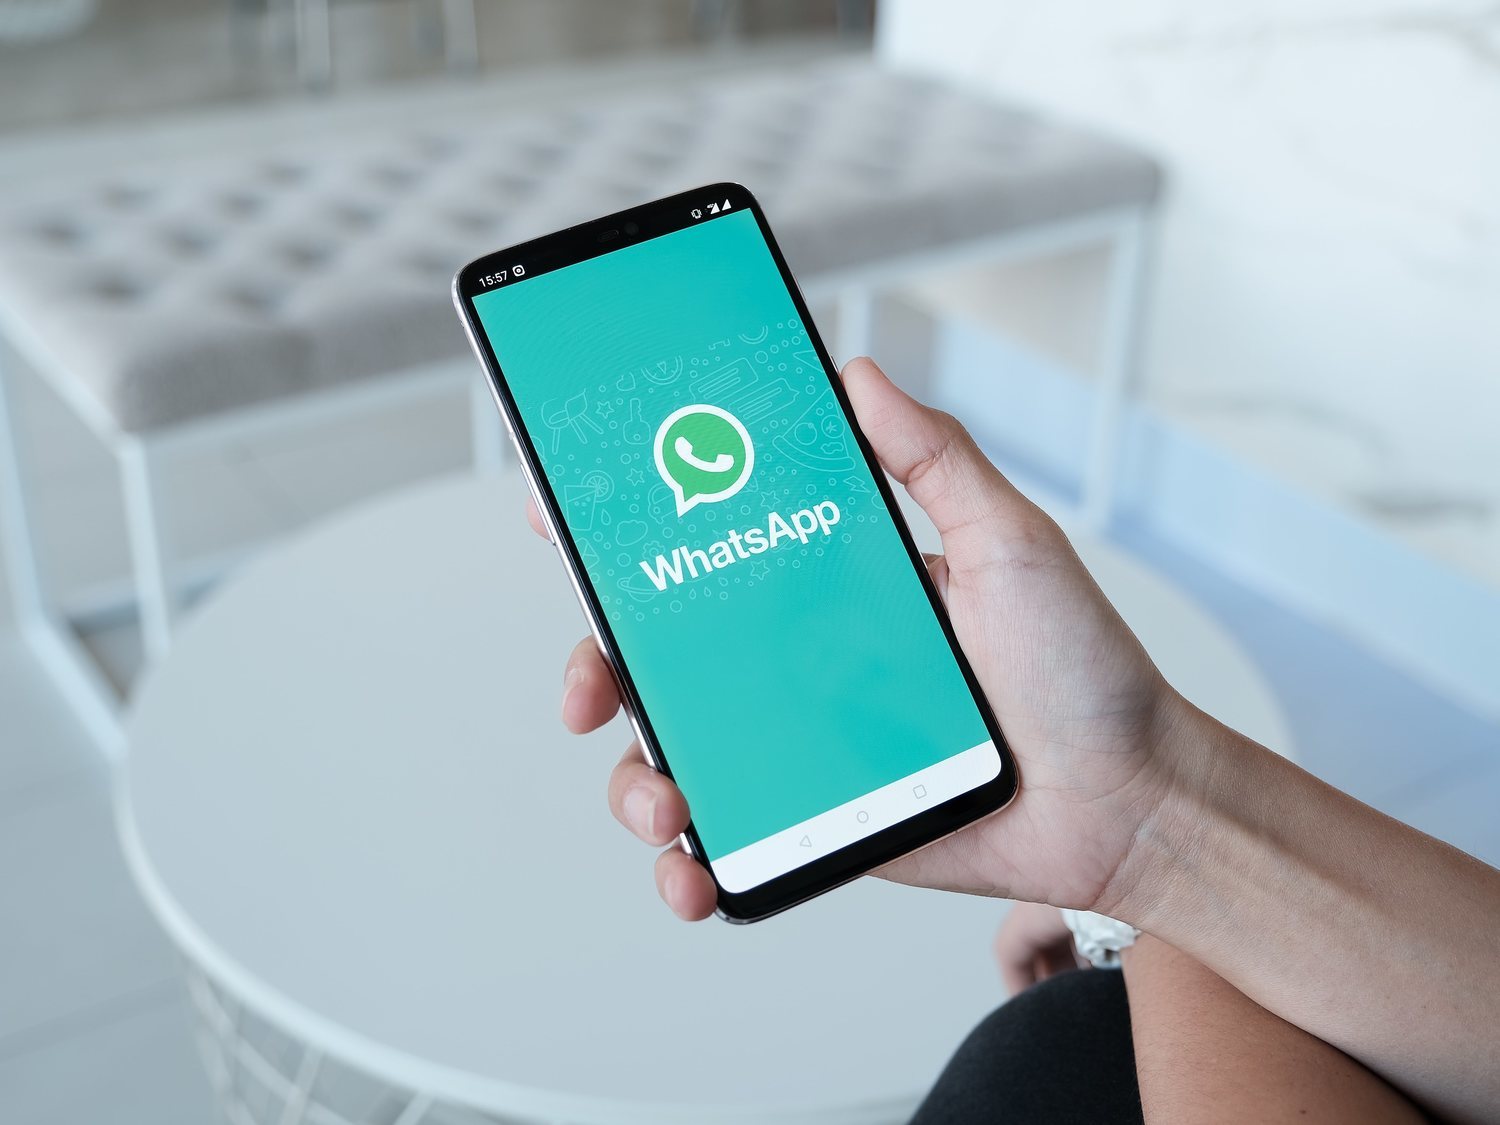 El fallo de WhatsApp que permite acceder a grupos y conversaciones privadas sin permiso